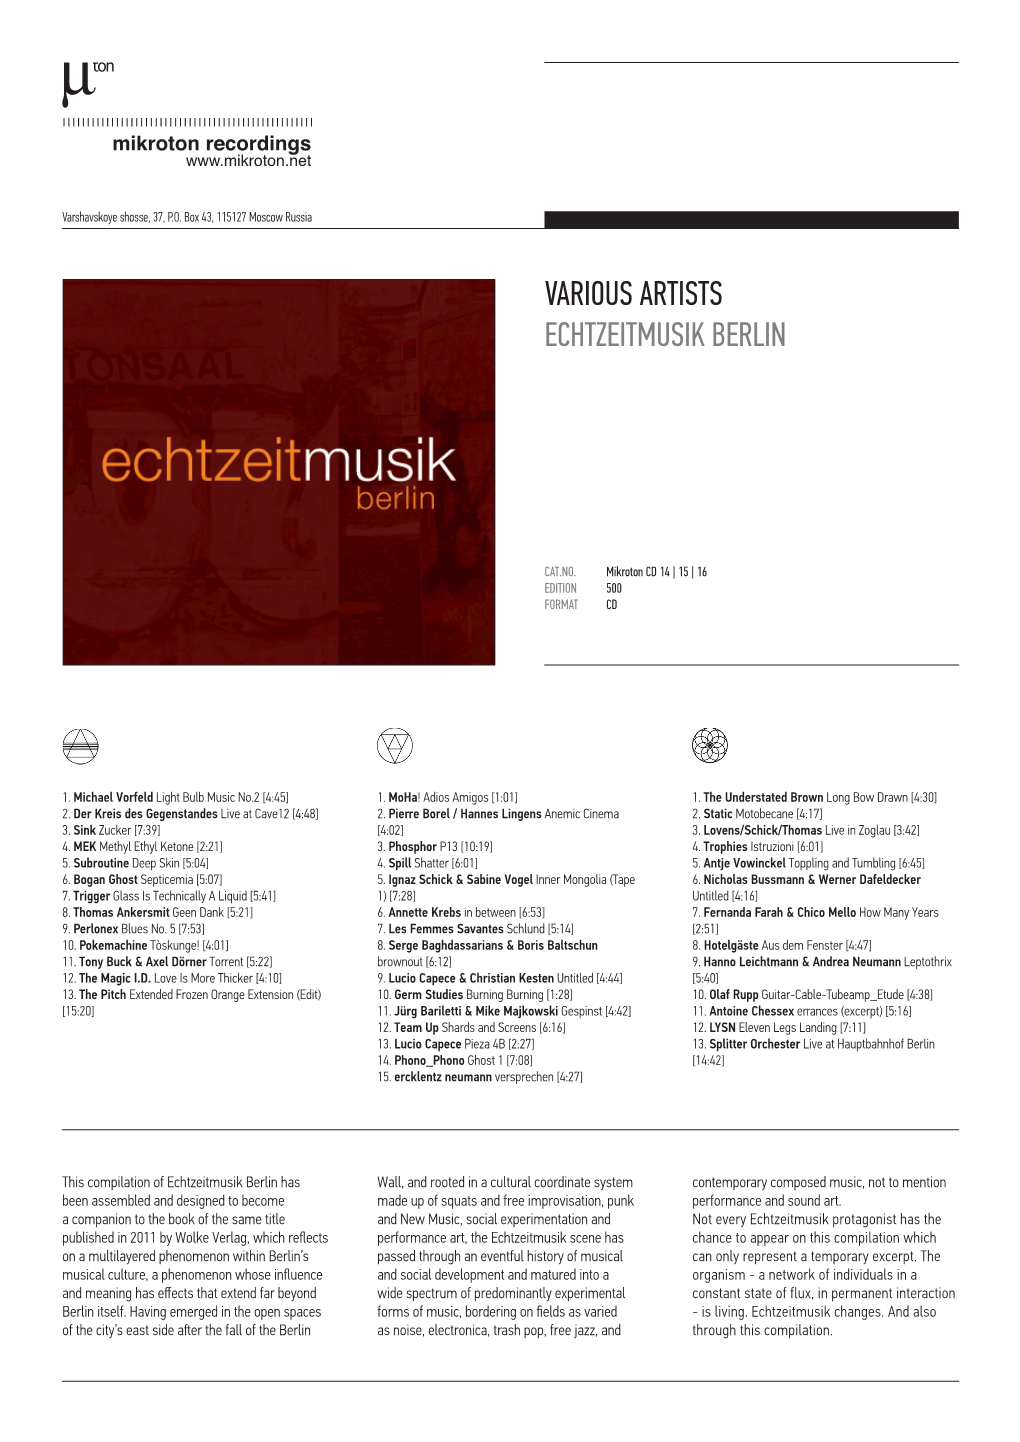 Various Artists Echtzeitmusik Berlin